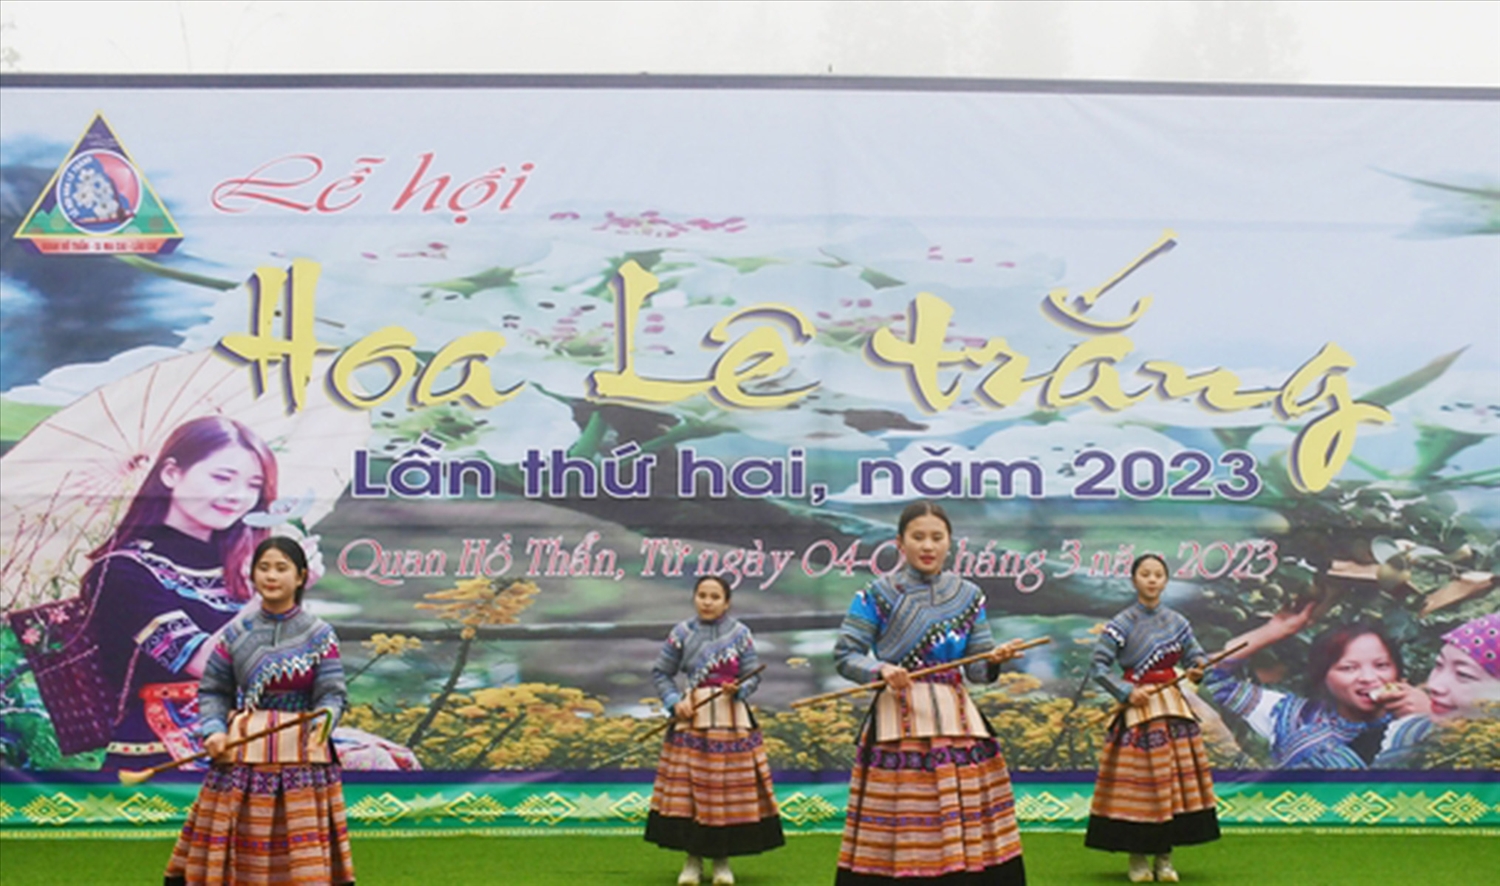 Lễ hội Hoa lê trắng lần thứ 2 ở thôn Lao Chải, xã Quan Hồ Thẩn